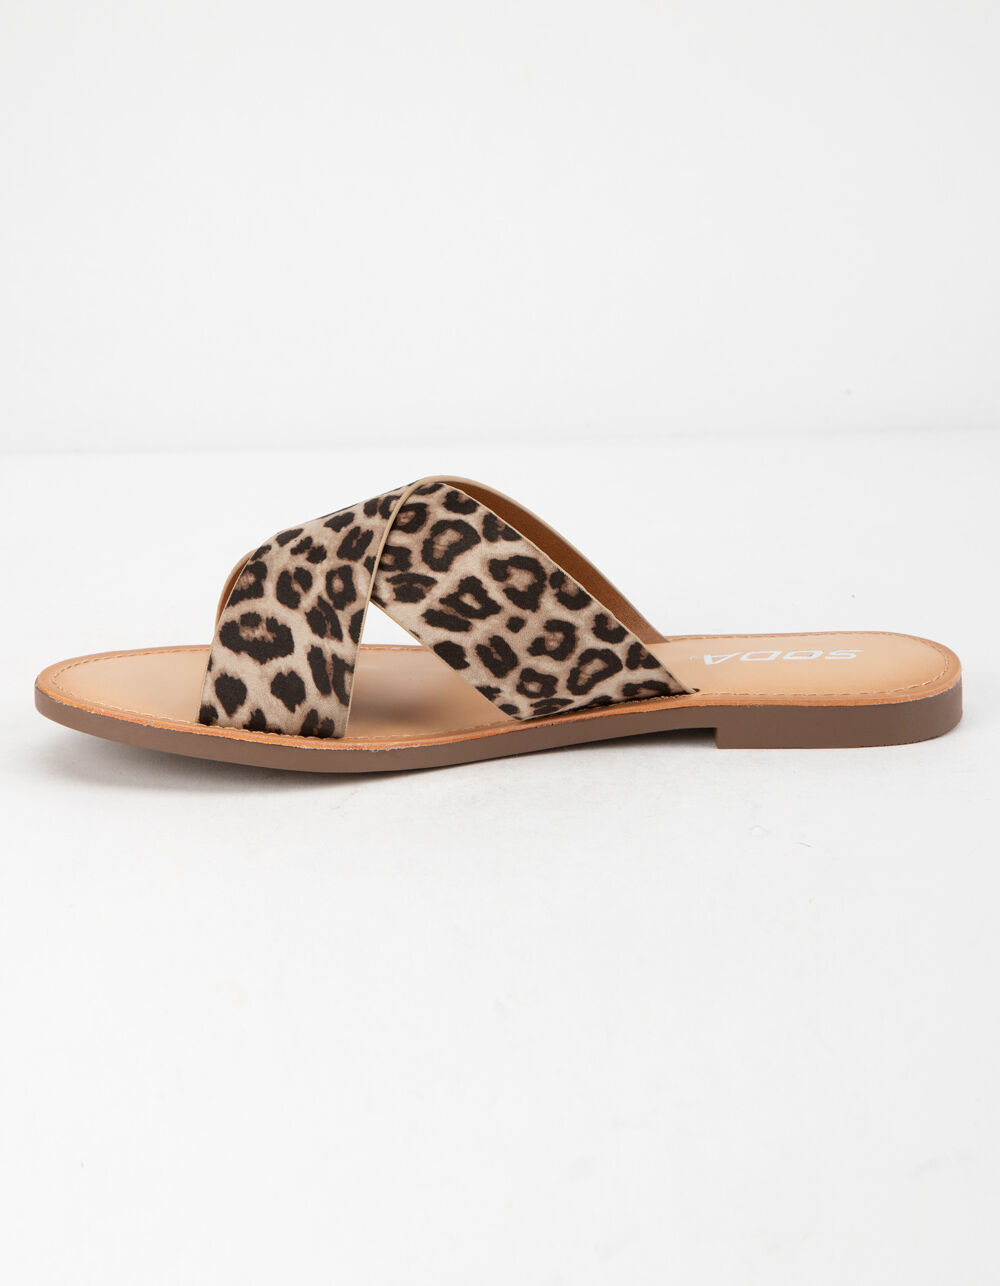 SODA Lunacy Leopard Womens Sandals - LEOPARD | Tillys